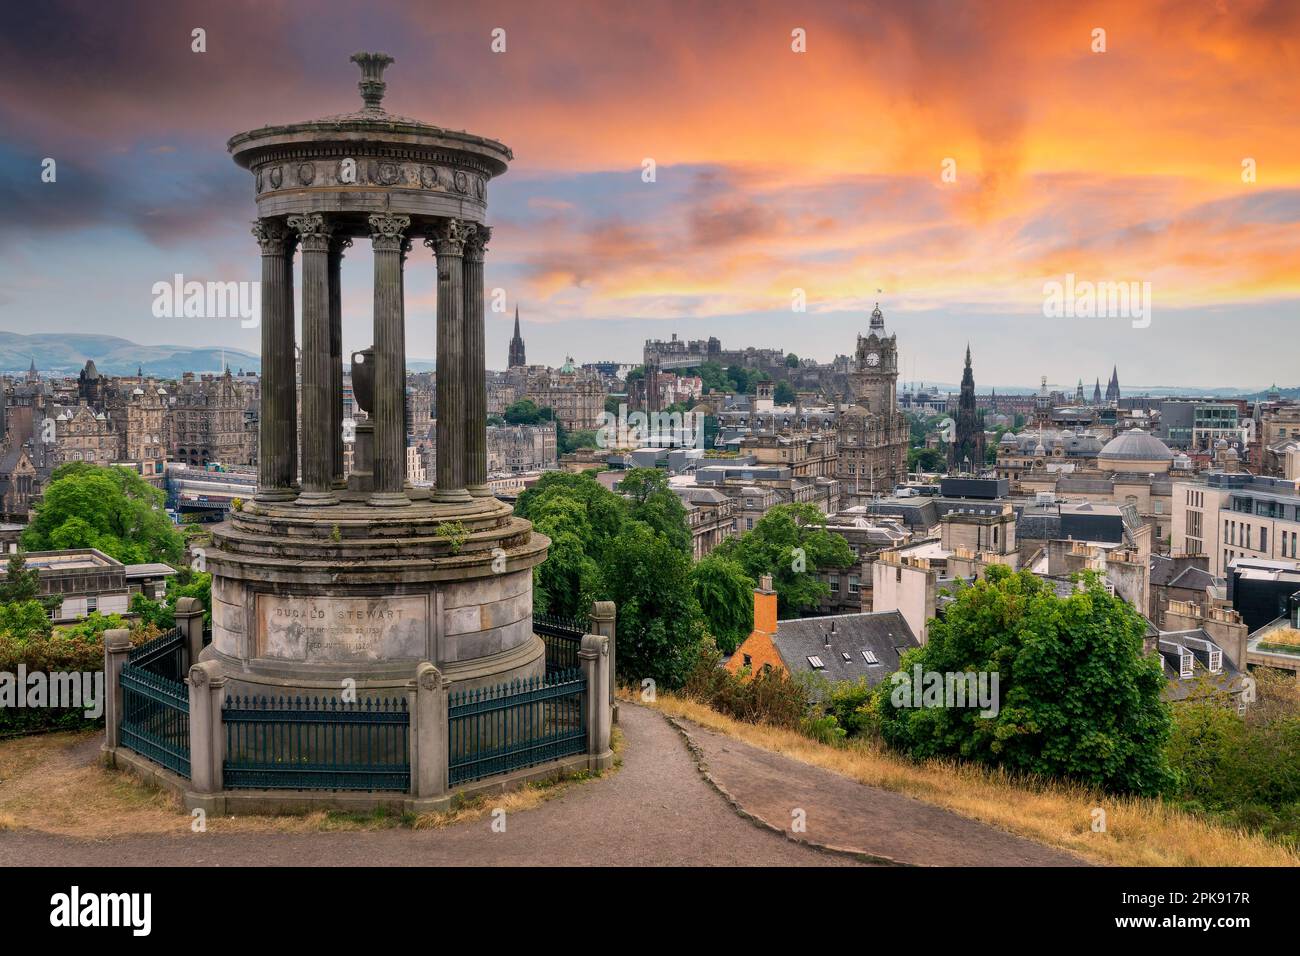 Vista aerea della città e del castello di Edimburgo con il monumento Dugald Stewart in Scozia al tramonto Foto Stock